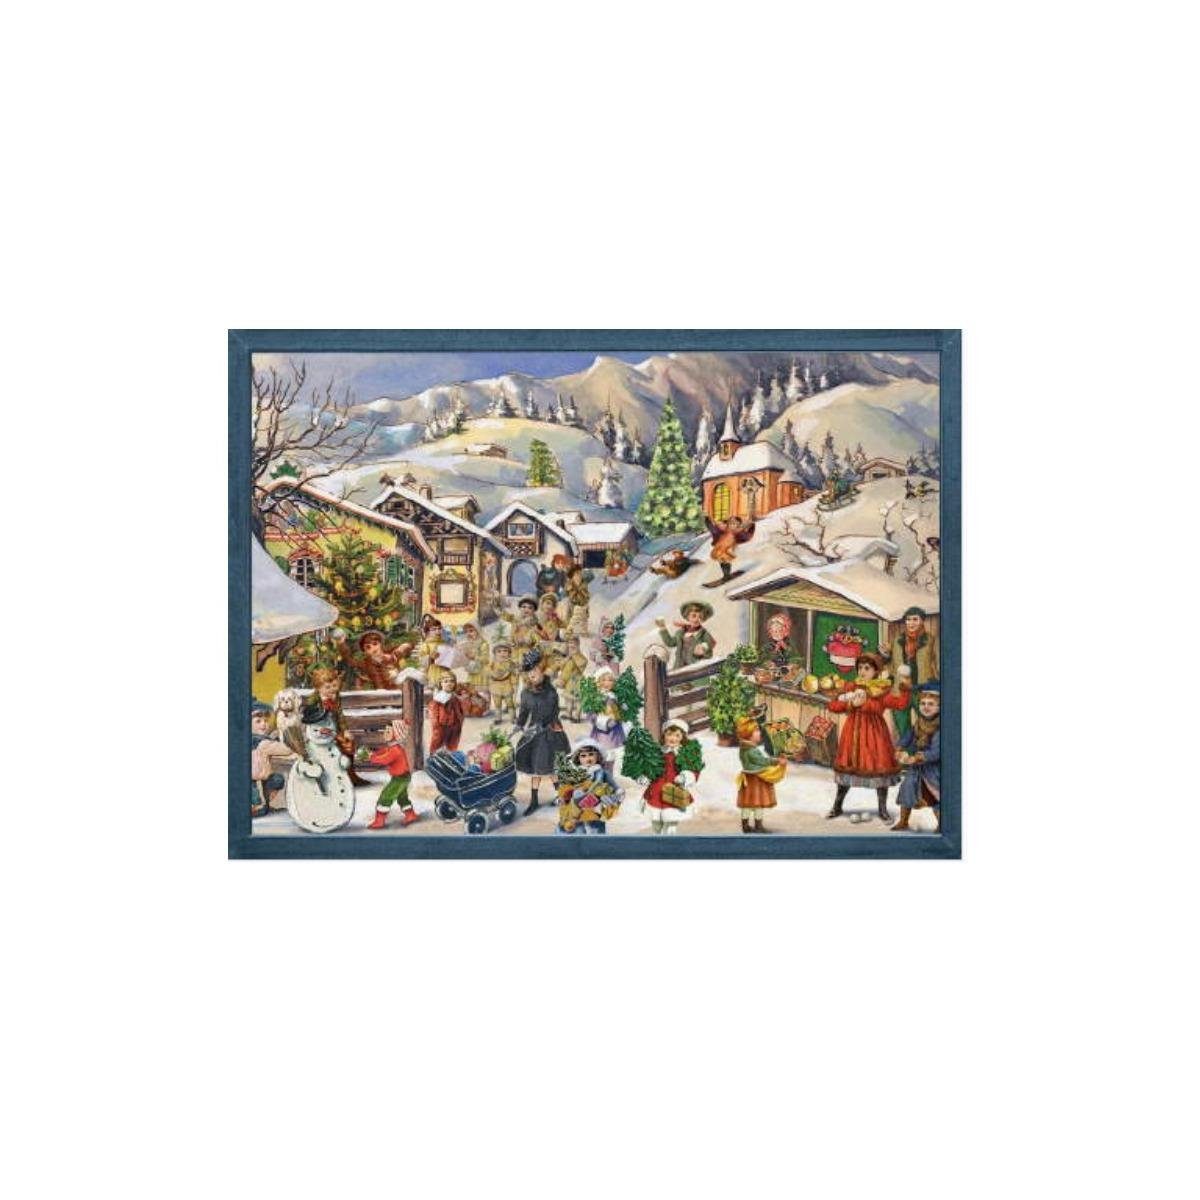 Richard Sellmer Verlag Adventskalender 70105 - Adventskalender - Weihnachtsmarkt, 35,5cm x 26,5cm